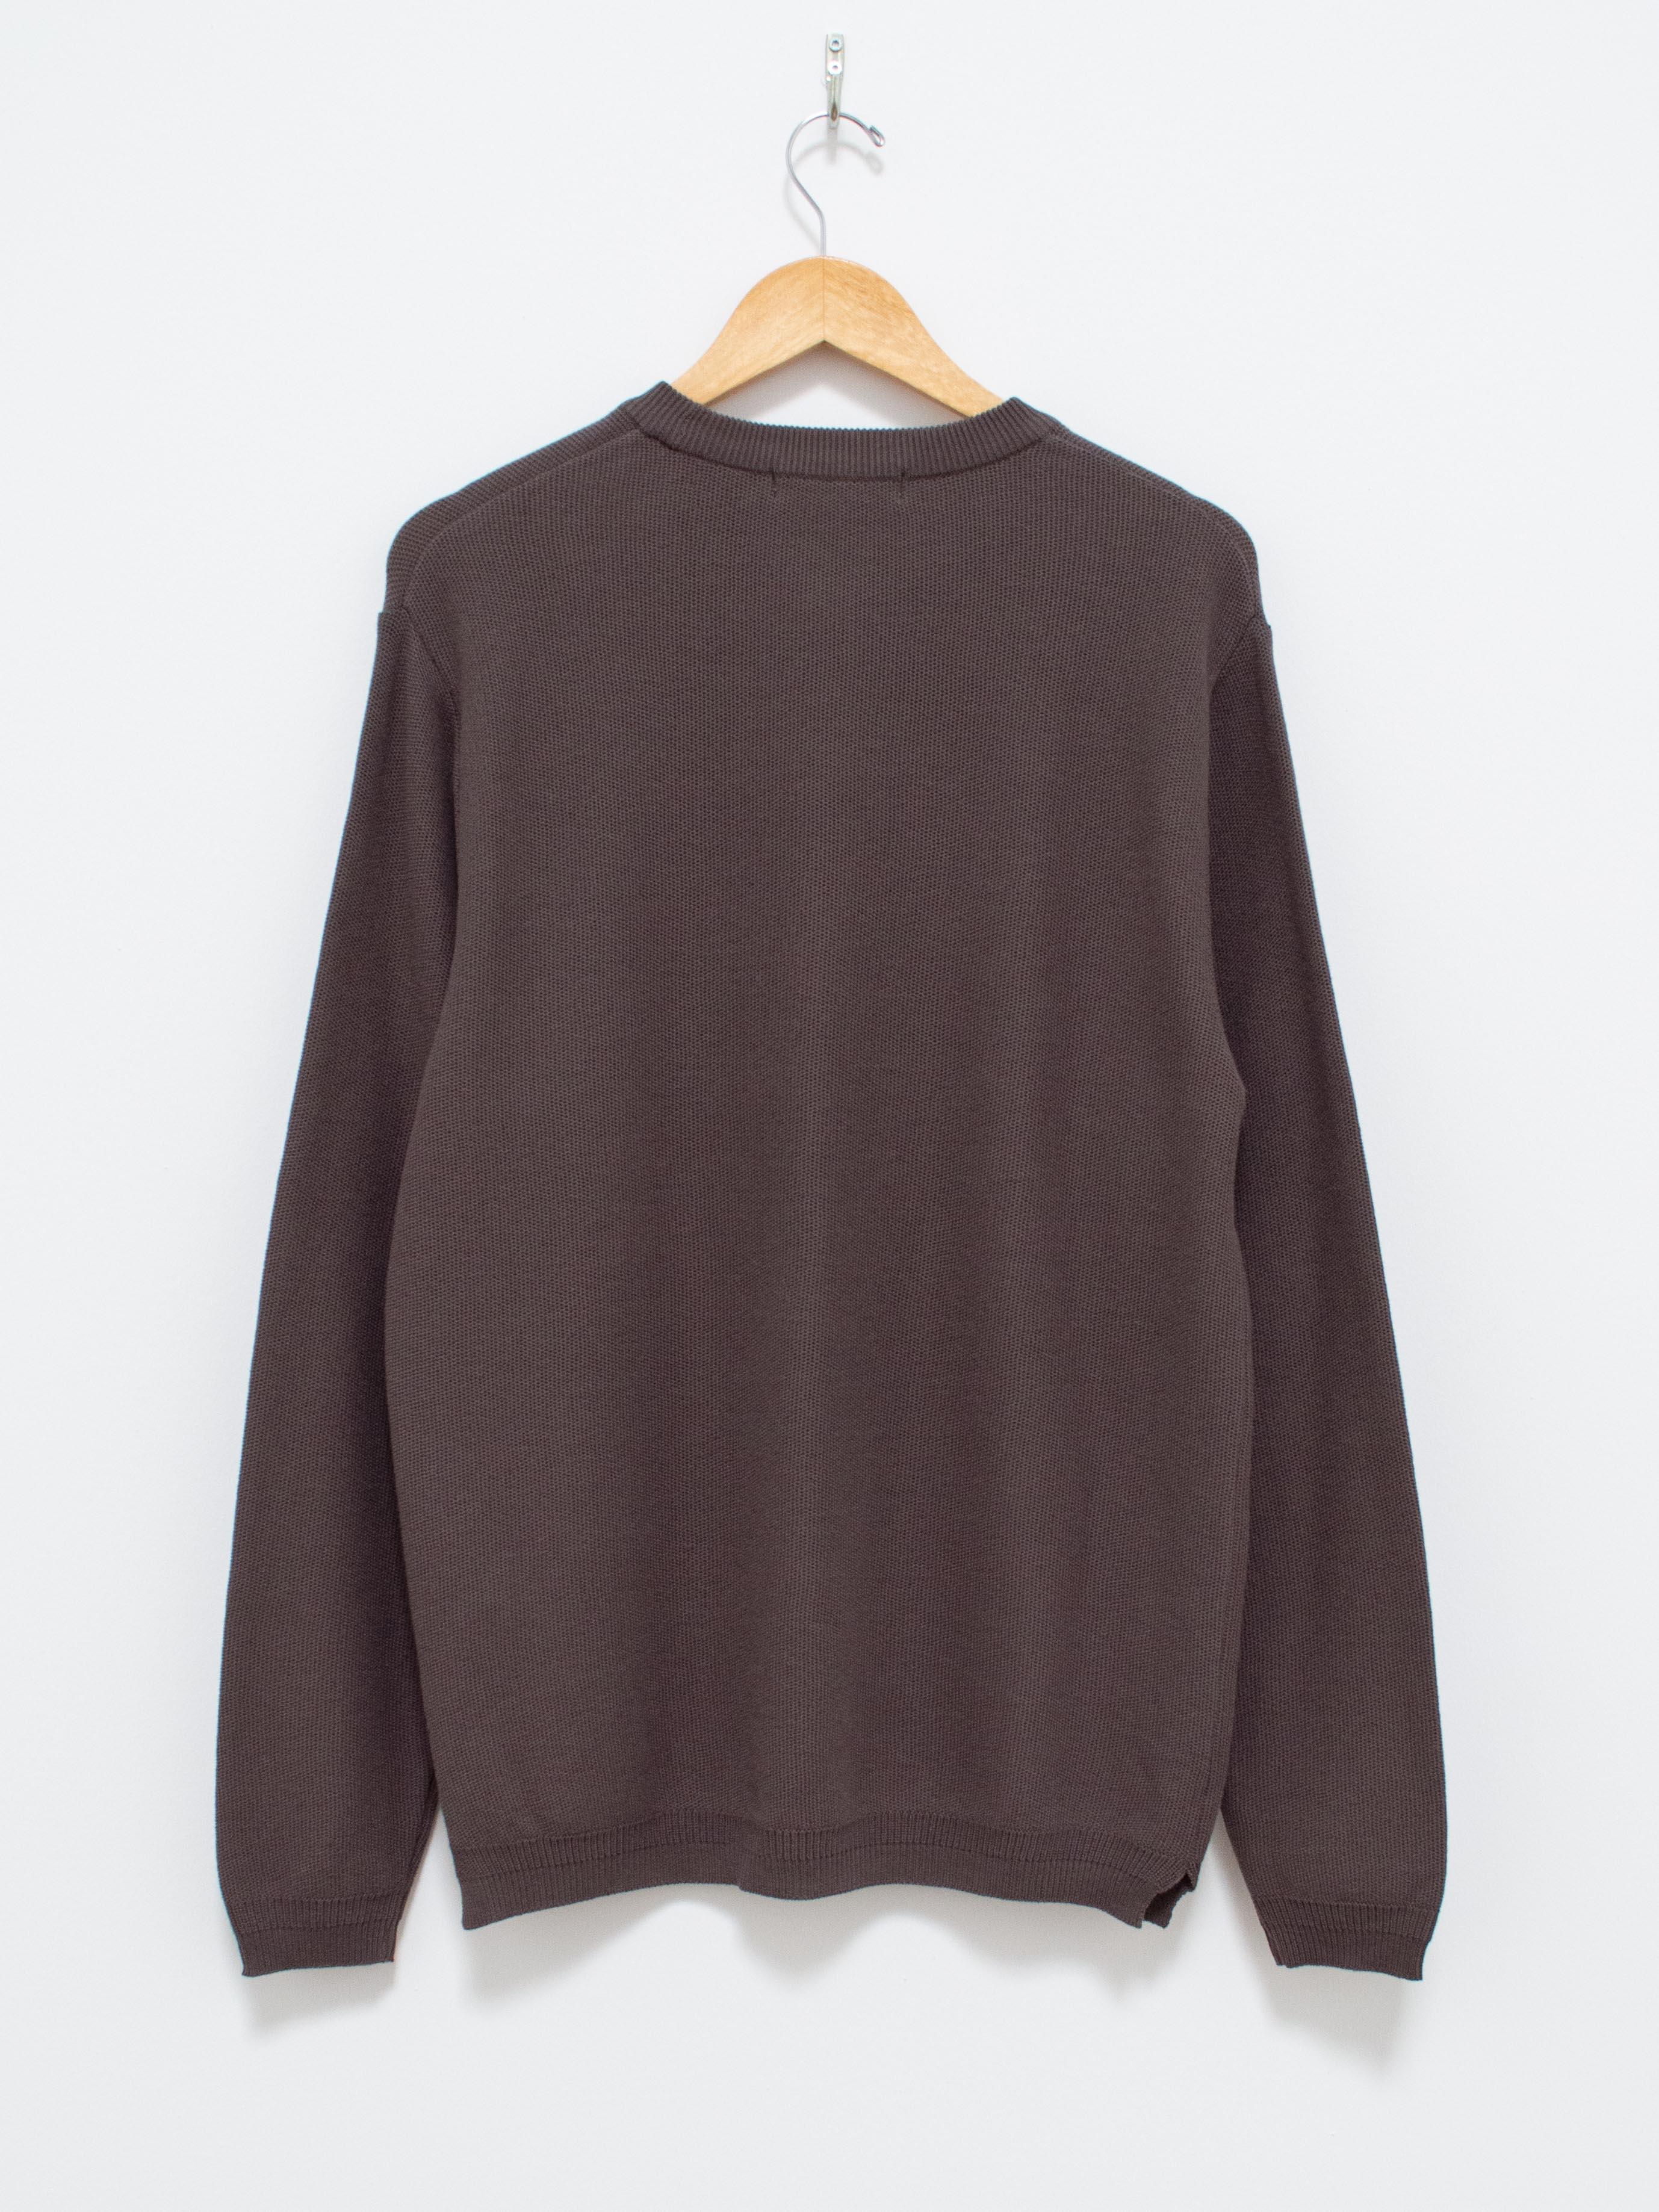 Namu Shop - Fujito L/S Knit T-Shirt - Charcoal